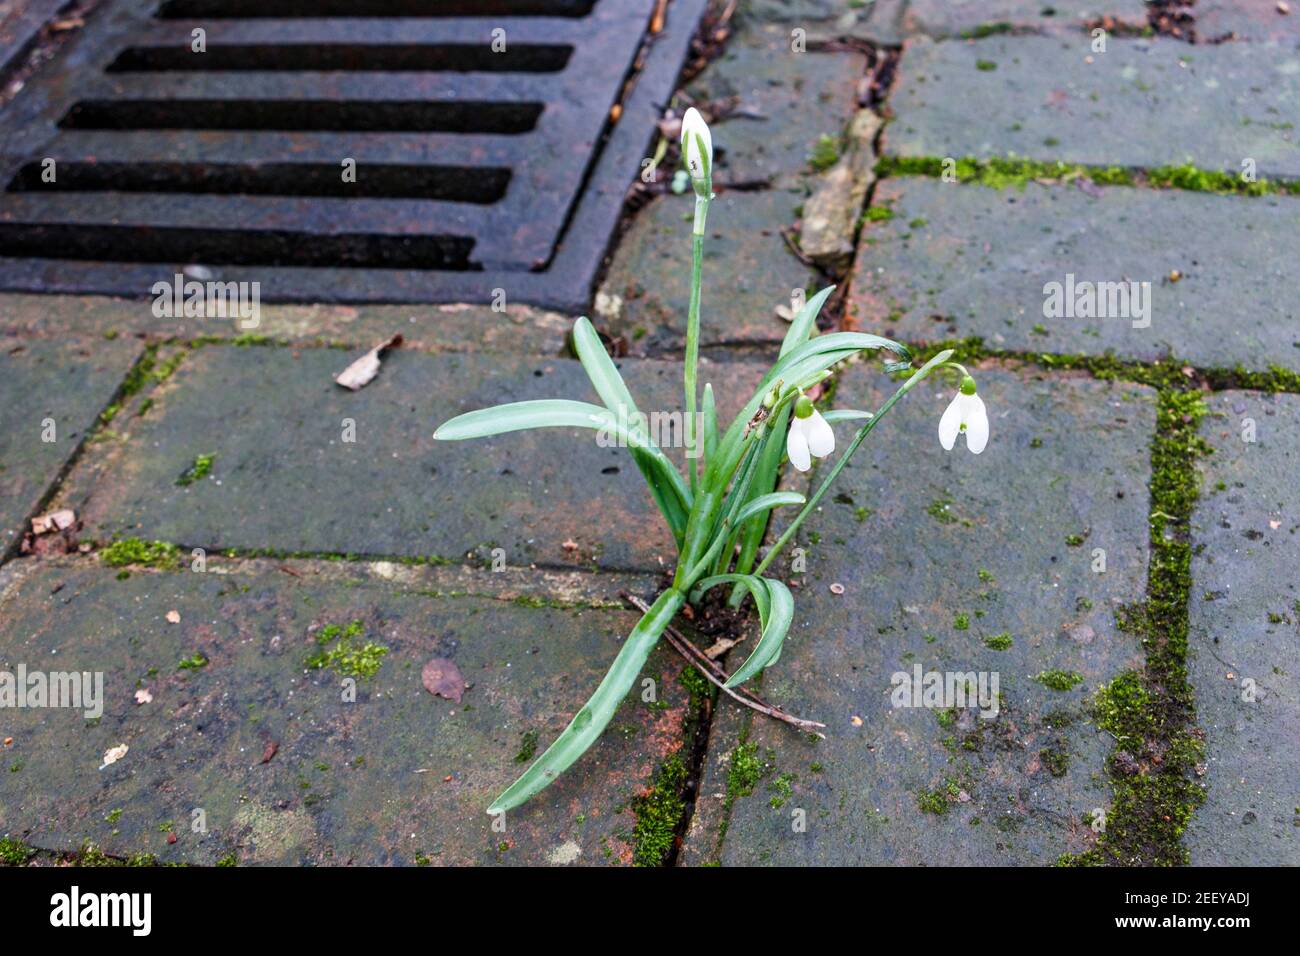 Una sola goccia di neve fiorisce nelle fessure di una strada di Londra, mentre il tempo più caldo incoraggia la fioritura precoce. Le piante stanno fiorendo un mese prima nel Regno Unito mentre il clima si riscalda, uno studio ha trovato. Foto Stock